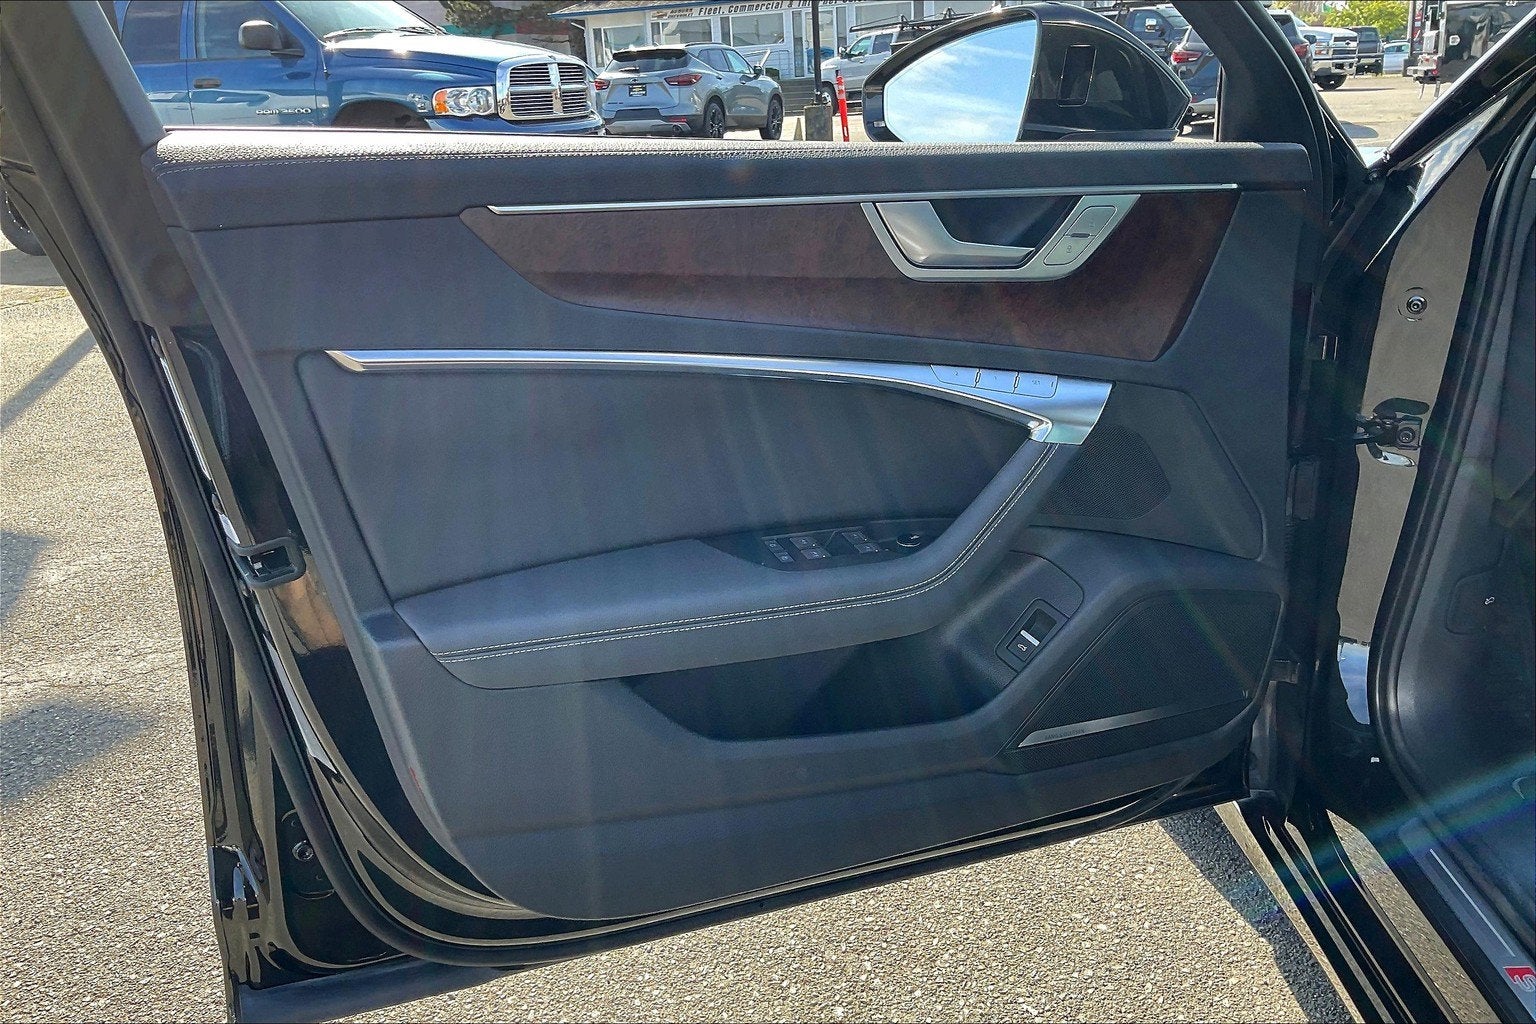 2019 Audi A6 3.0T Prestige quattro